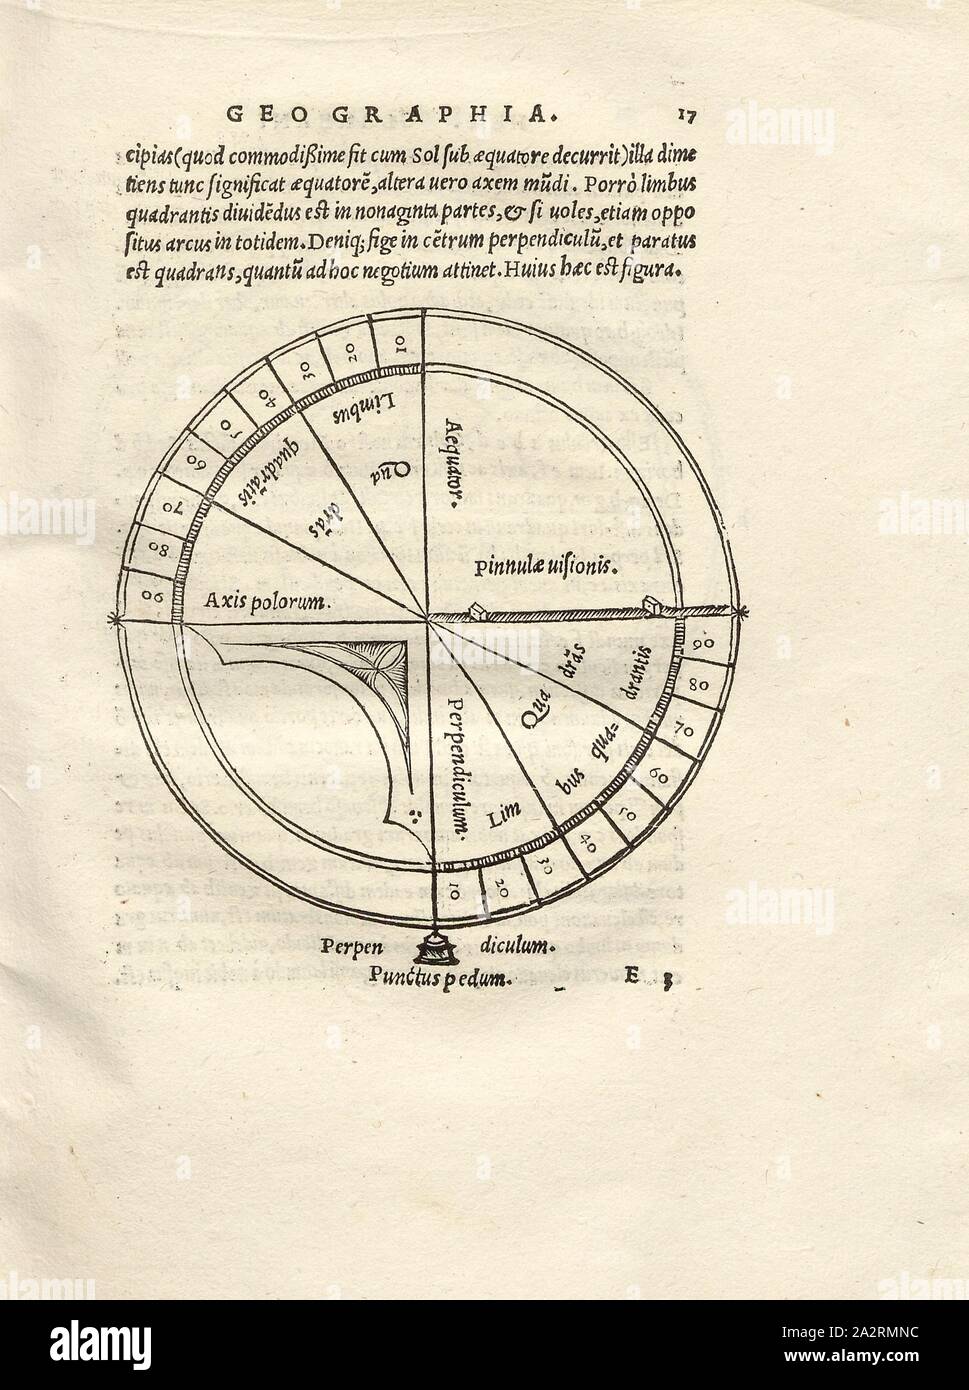 Quadrante 1, illustrazione di un quadrante dal XVI secolo, Fig. 6, p. 17, 1527, Henricus Glareanus Loriti: D.Henrici Glareani [...] De geographia liber unus. Basileae: [Faber], 1527 Foto Stock